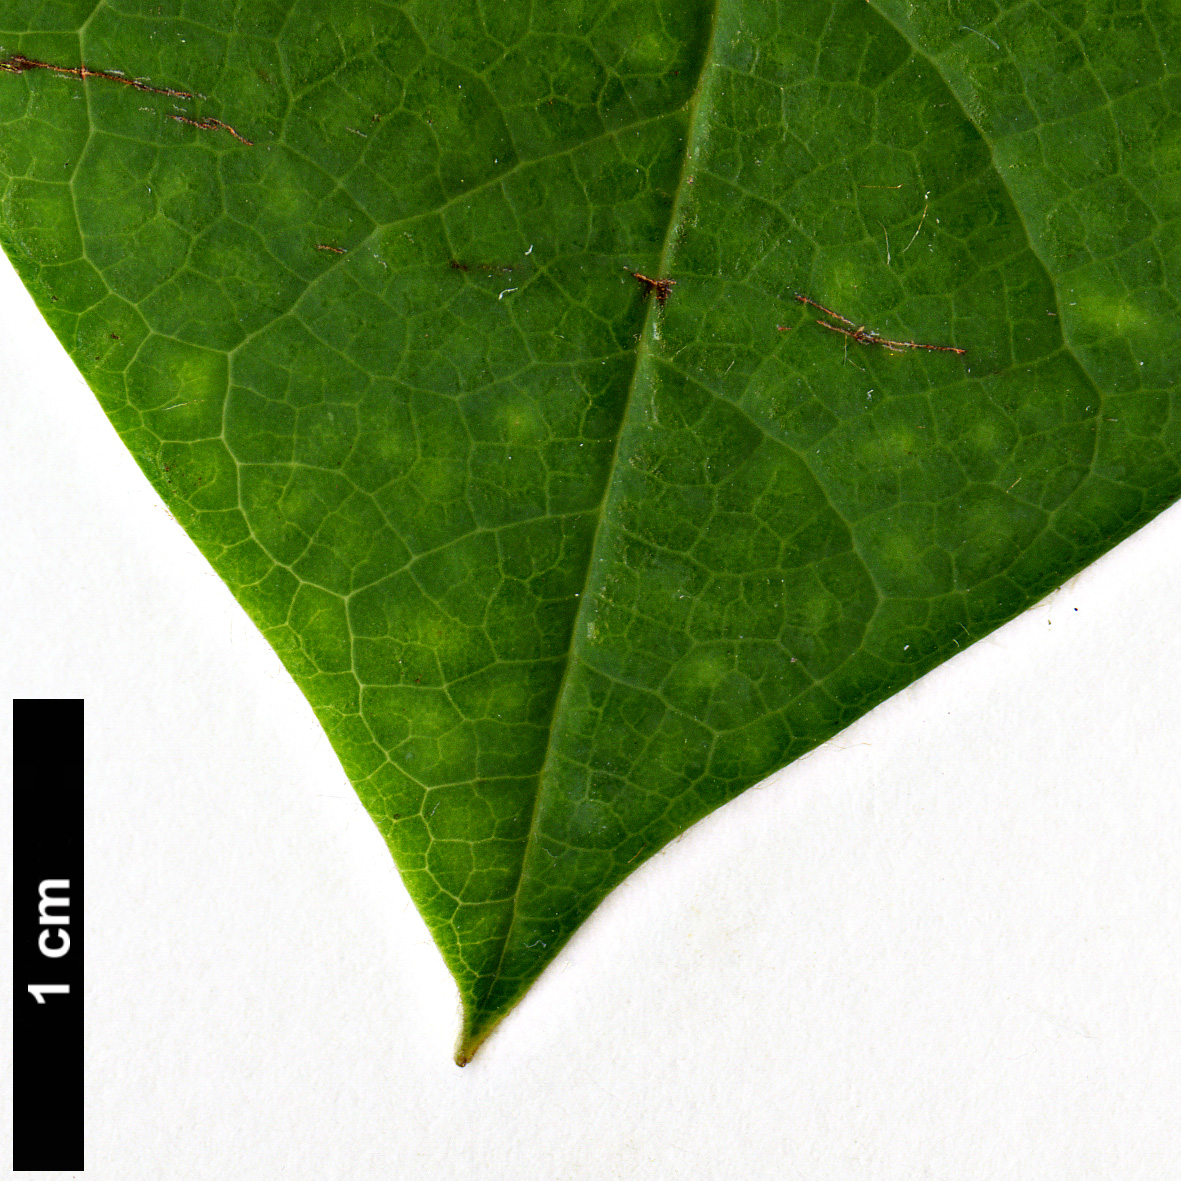 High resolution image: Family: Magnoliaceae - Genus: Magnolia - Taxon: sinensis